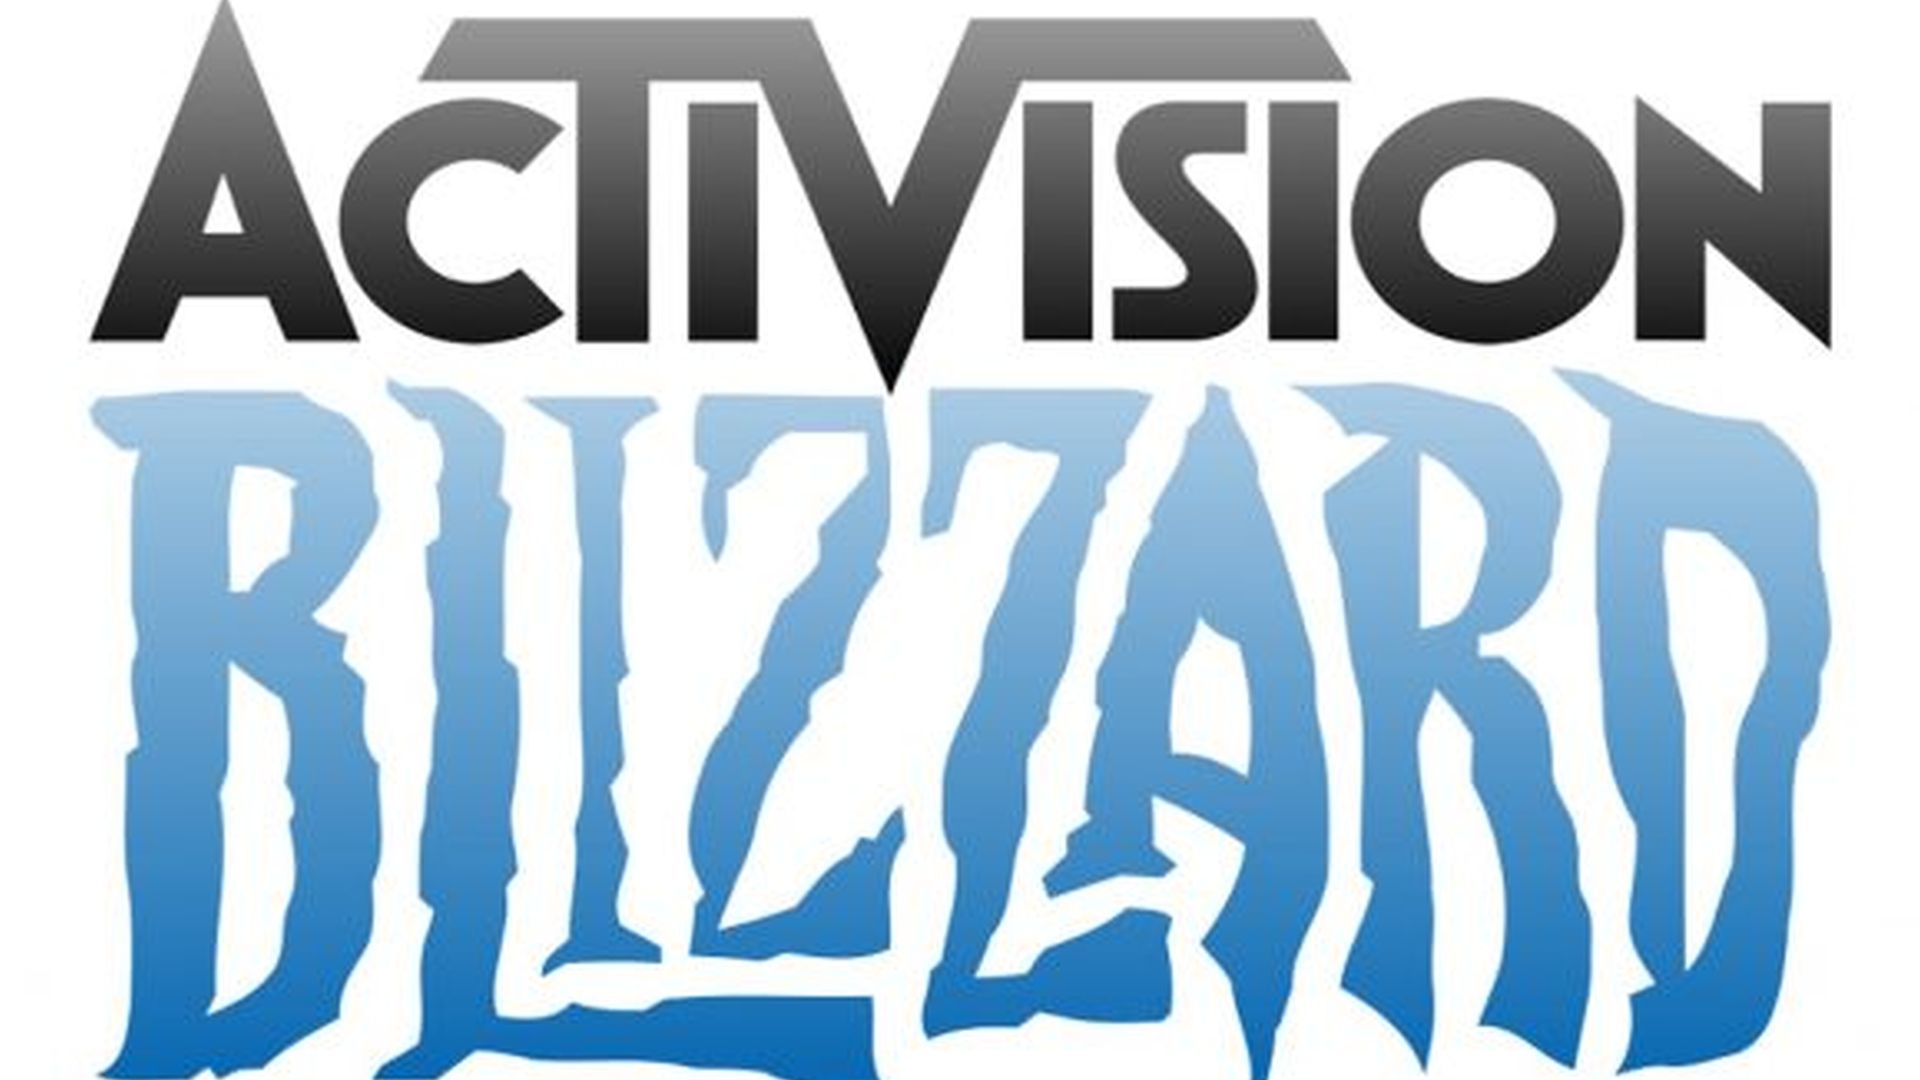 Η ABK Workers Alliance απαιτεί αλλαγή στην Activision Blizzard